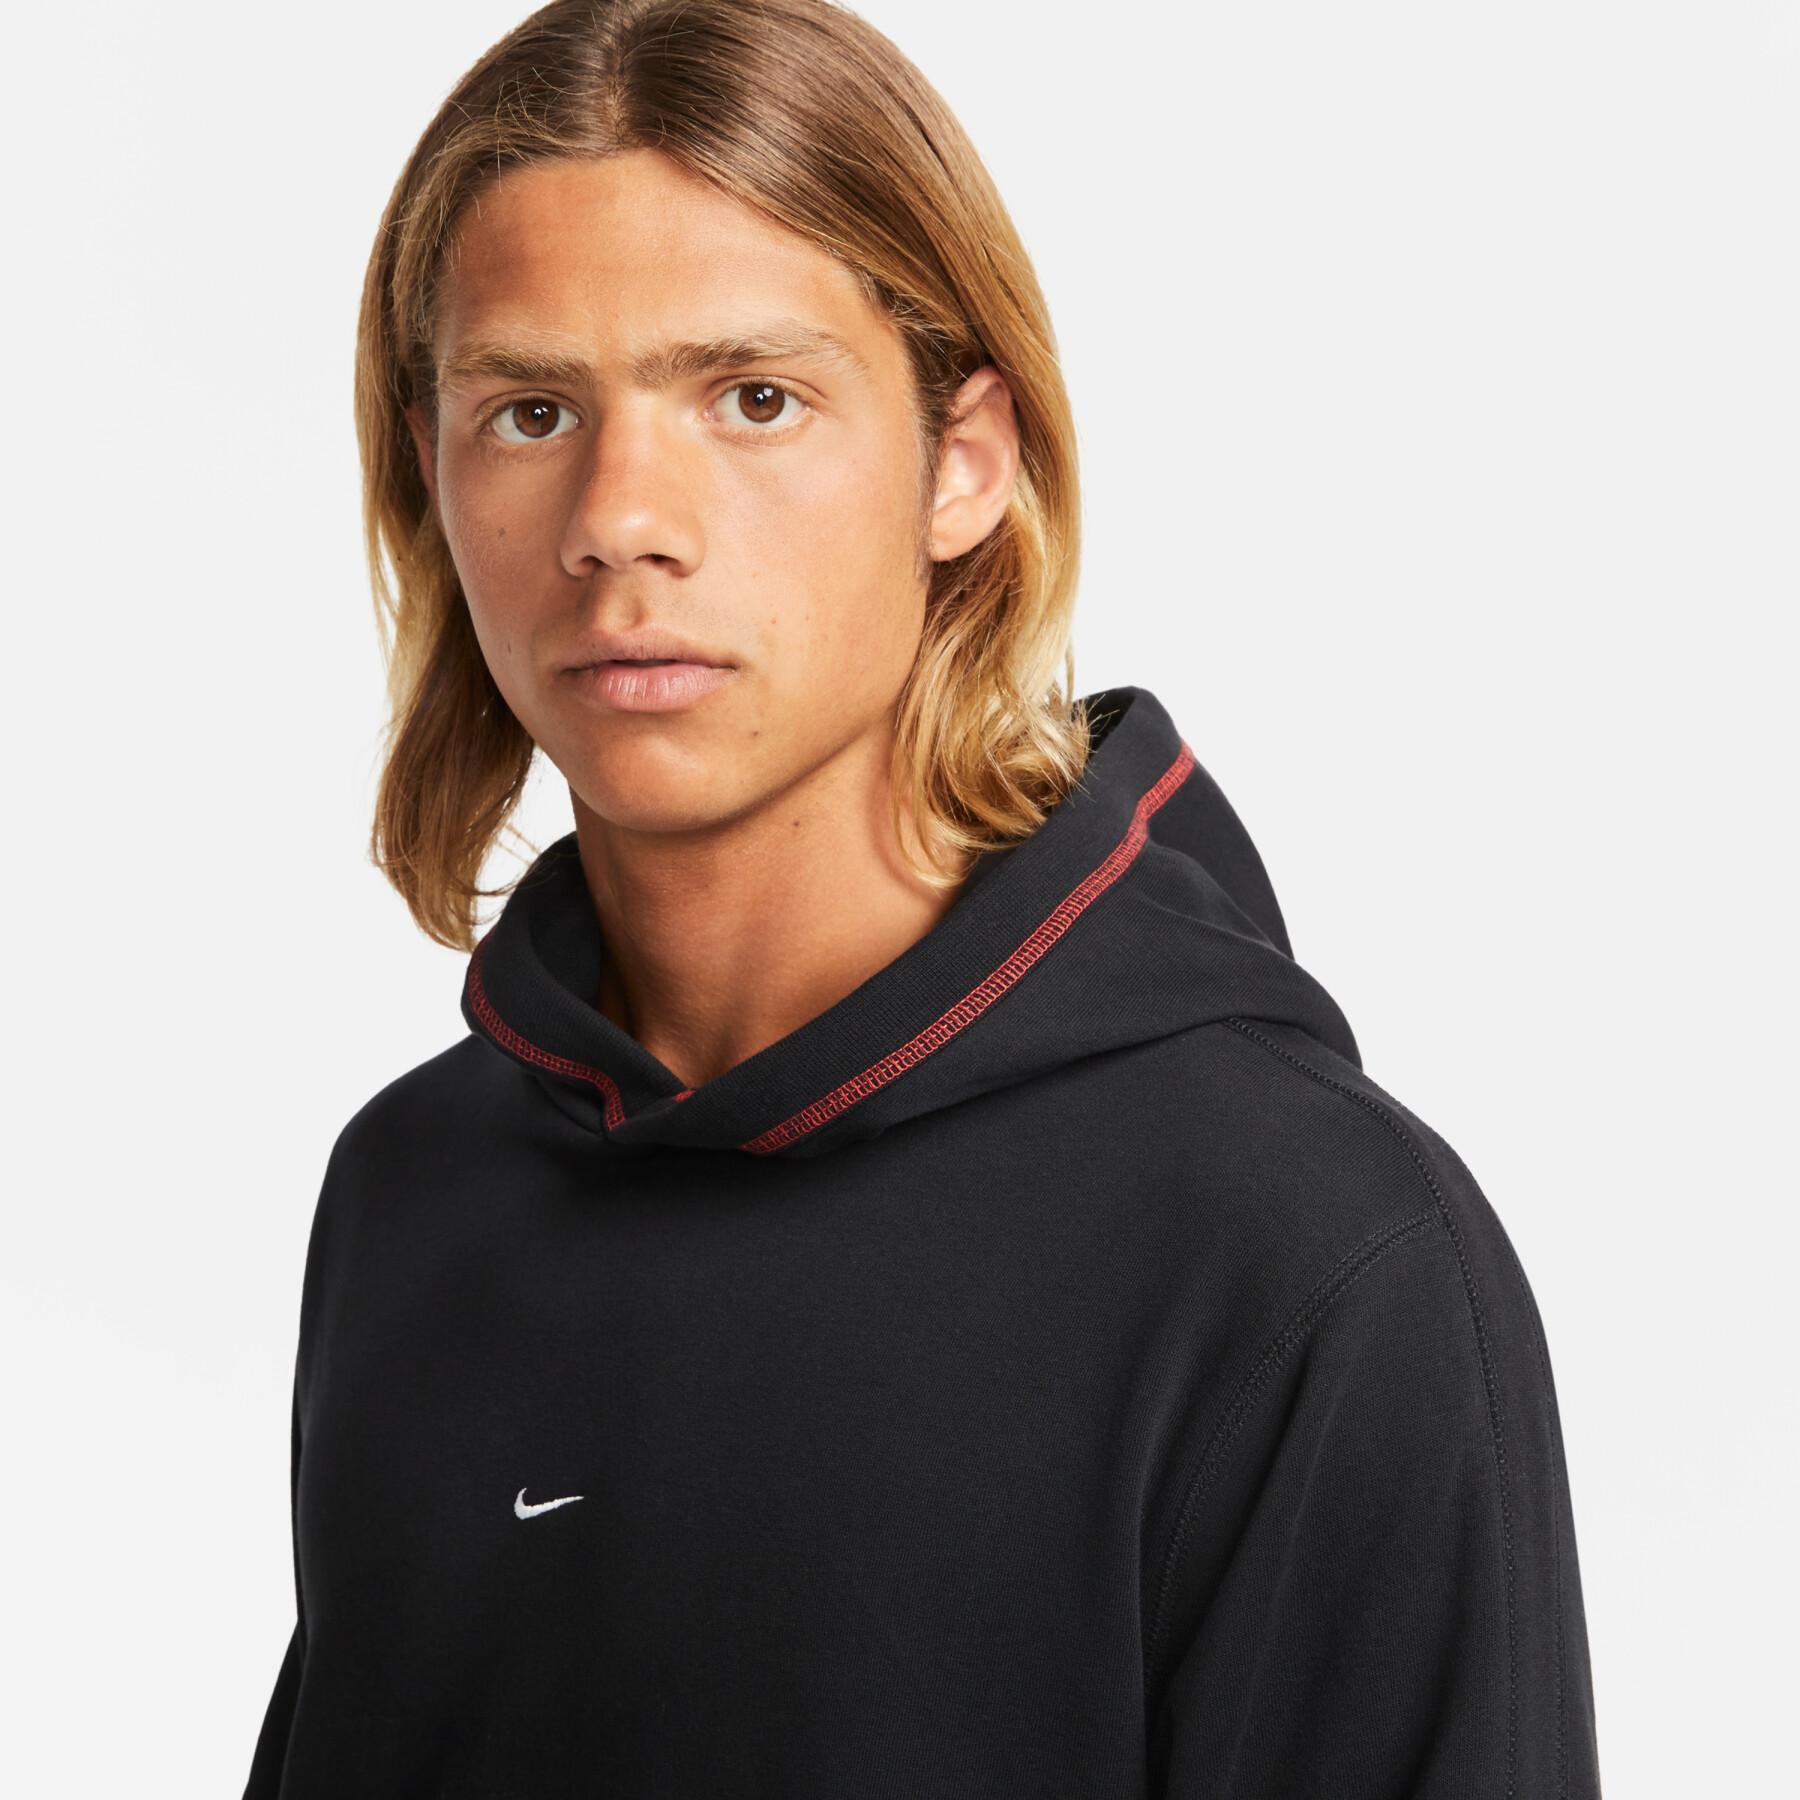 Camisola com capuz Nike Fleece